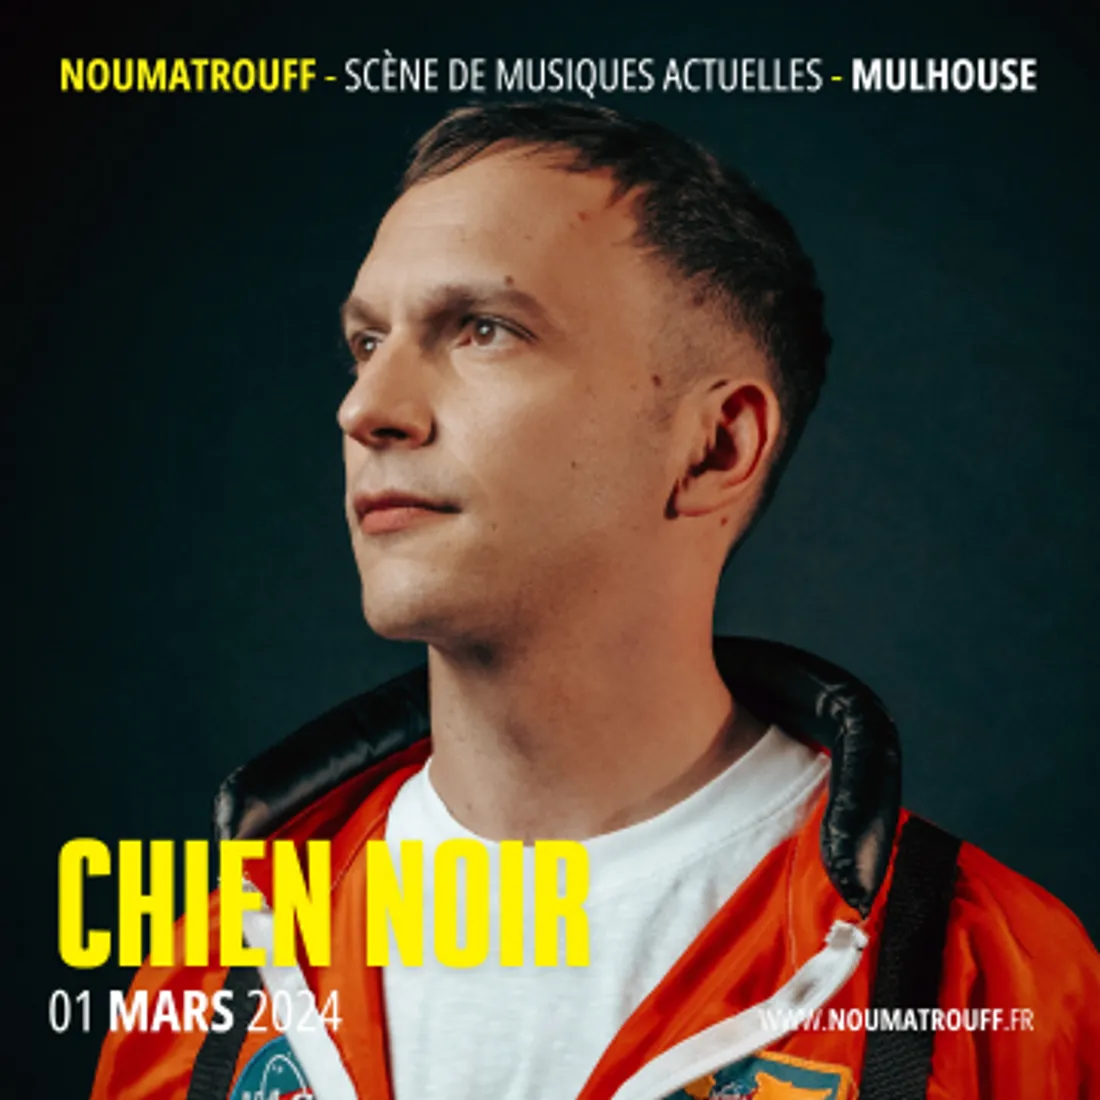 CHIEN NOIR + POPPY FUSÉE noumatrouff